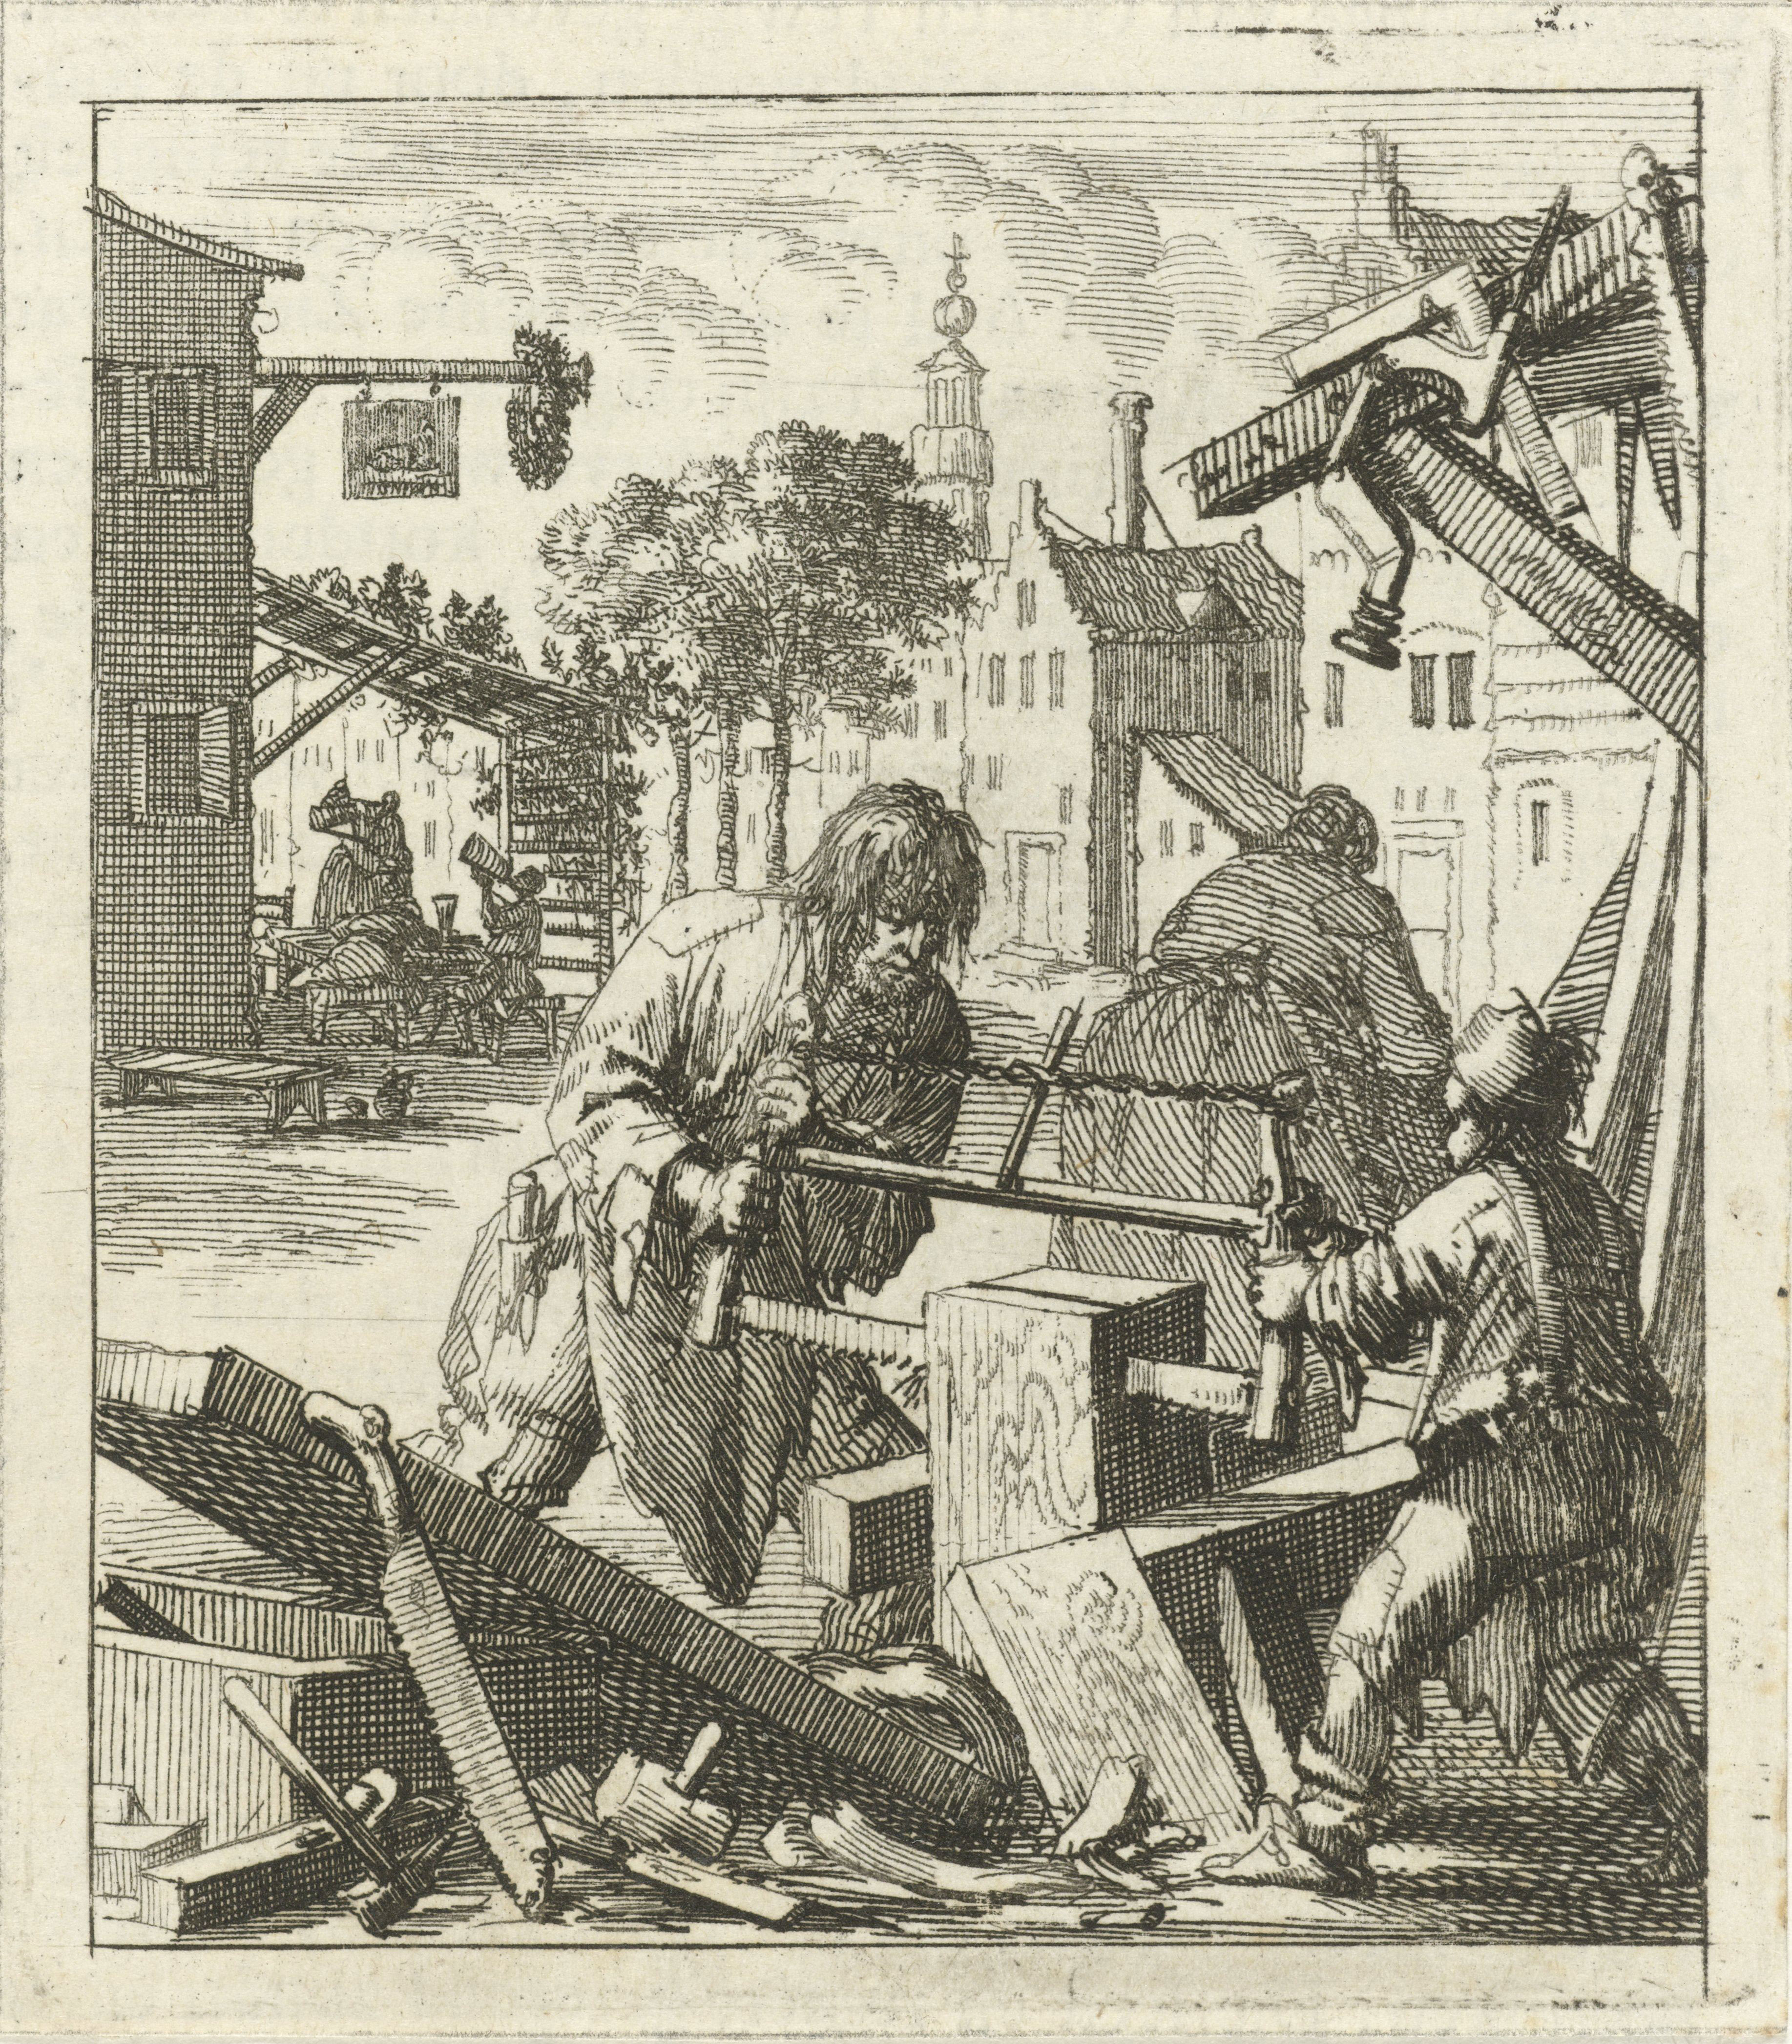 Illustratie uit: Huygen, Pieter. De beginselen van Gods koninkryk in den mensch uitgedrukt in zinnebeelden. Amsterdam: wed. Arentsz. Pieter (II), 1689, p. 32.